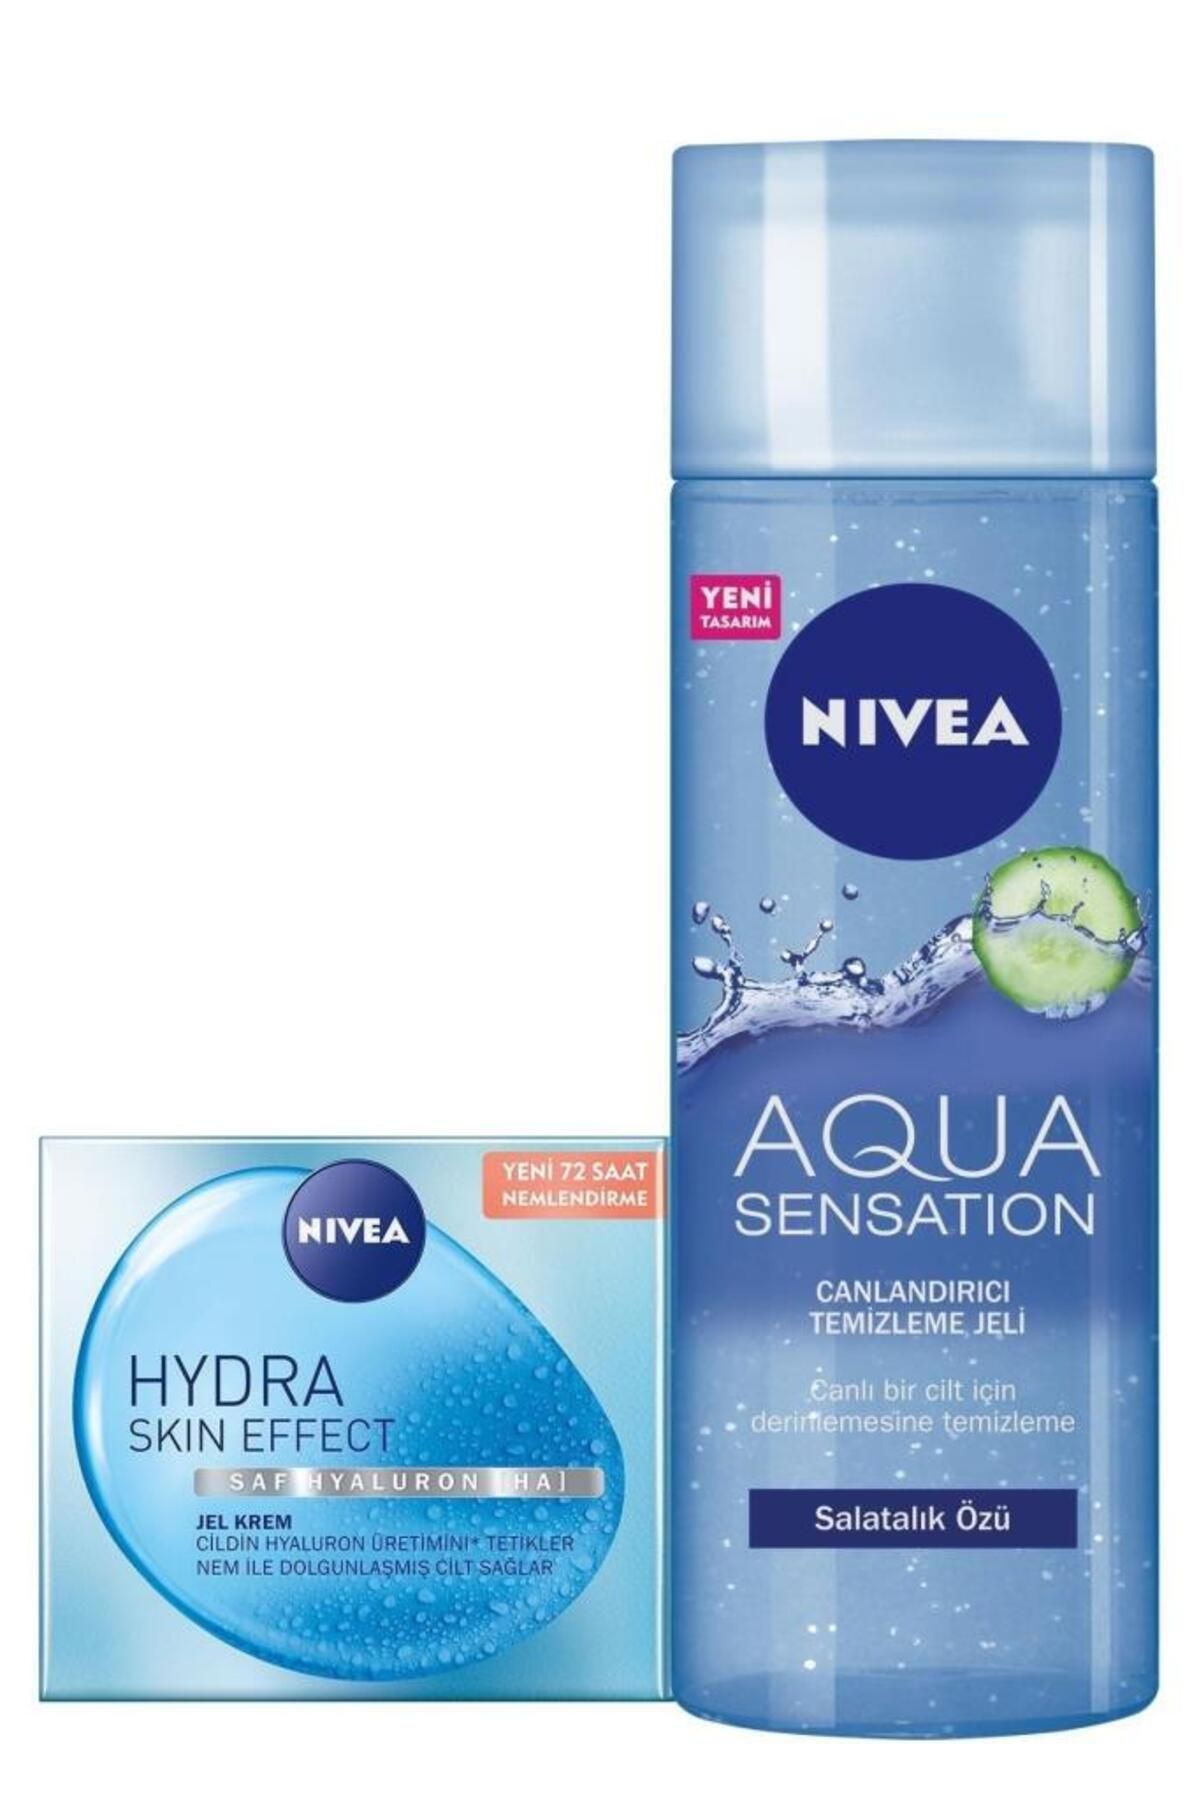 NIVEA Hydra Skin Effect Nemlendirici Jel Krem 50ml Ve Aqua Sensation Yüz Temizleme Jeli 200ml